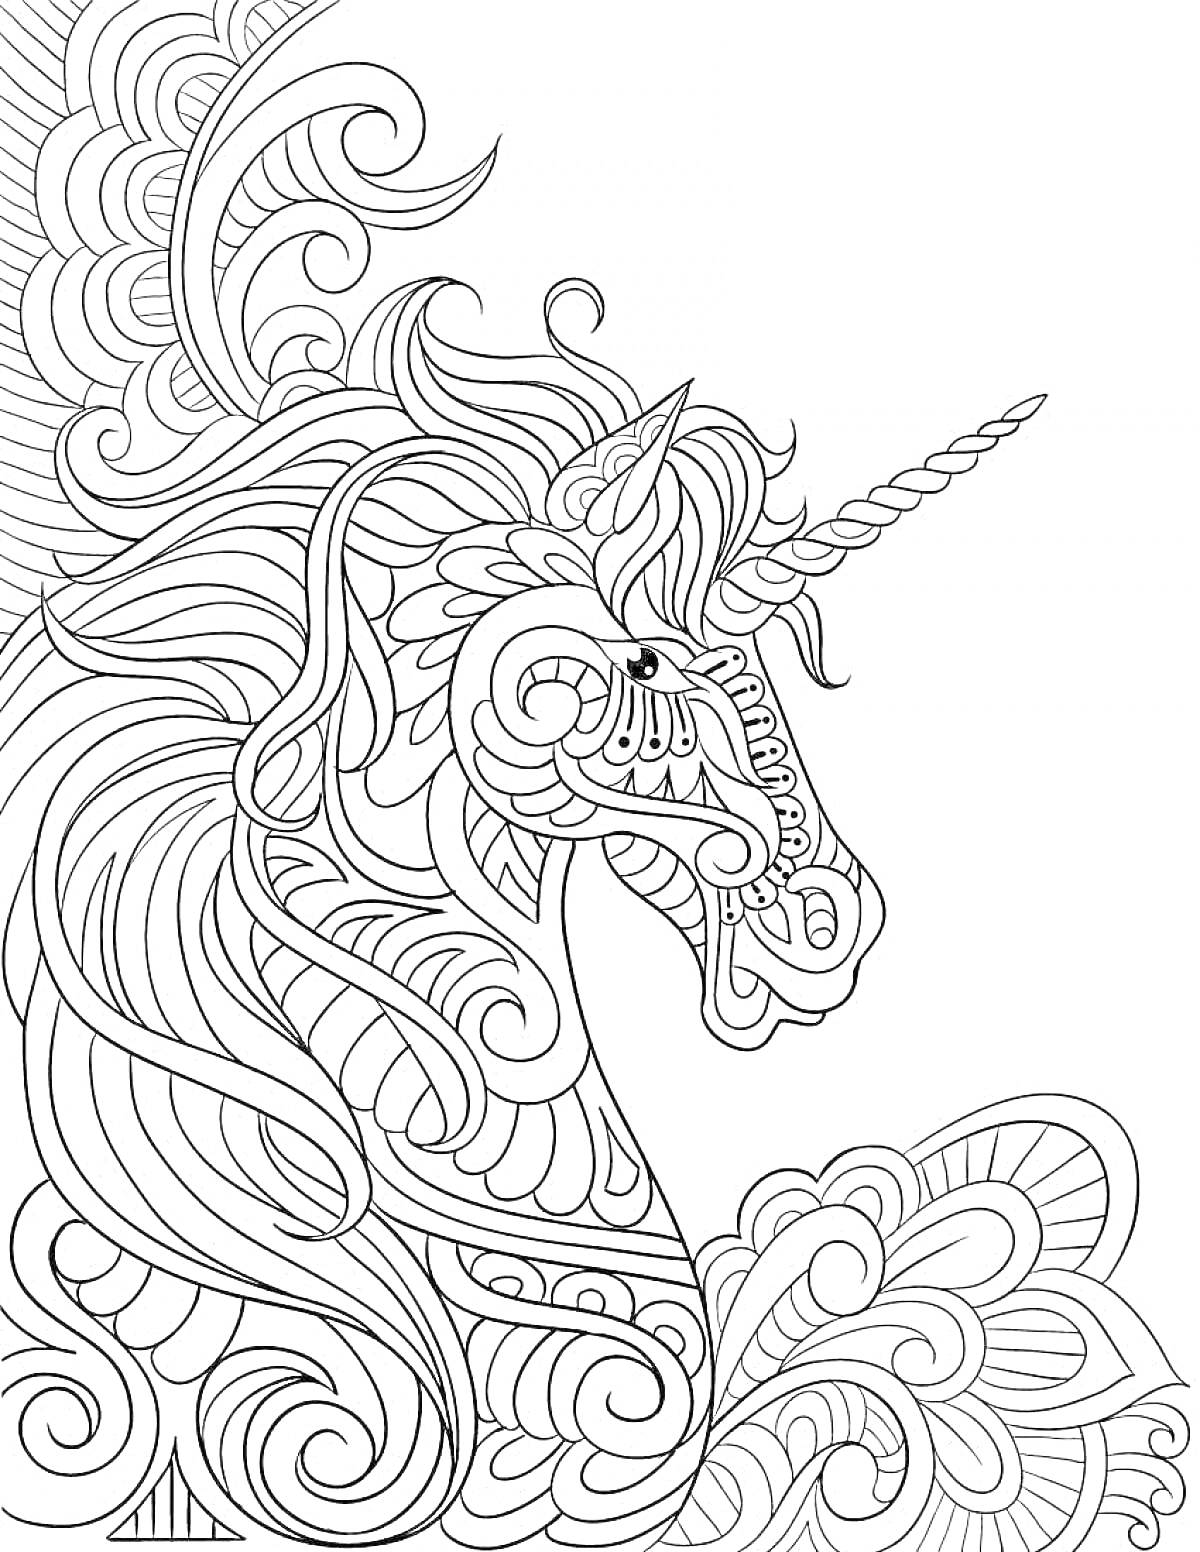 Раскраска Единорог с витыми узорами и завитками вокруг головы